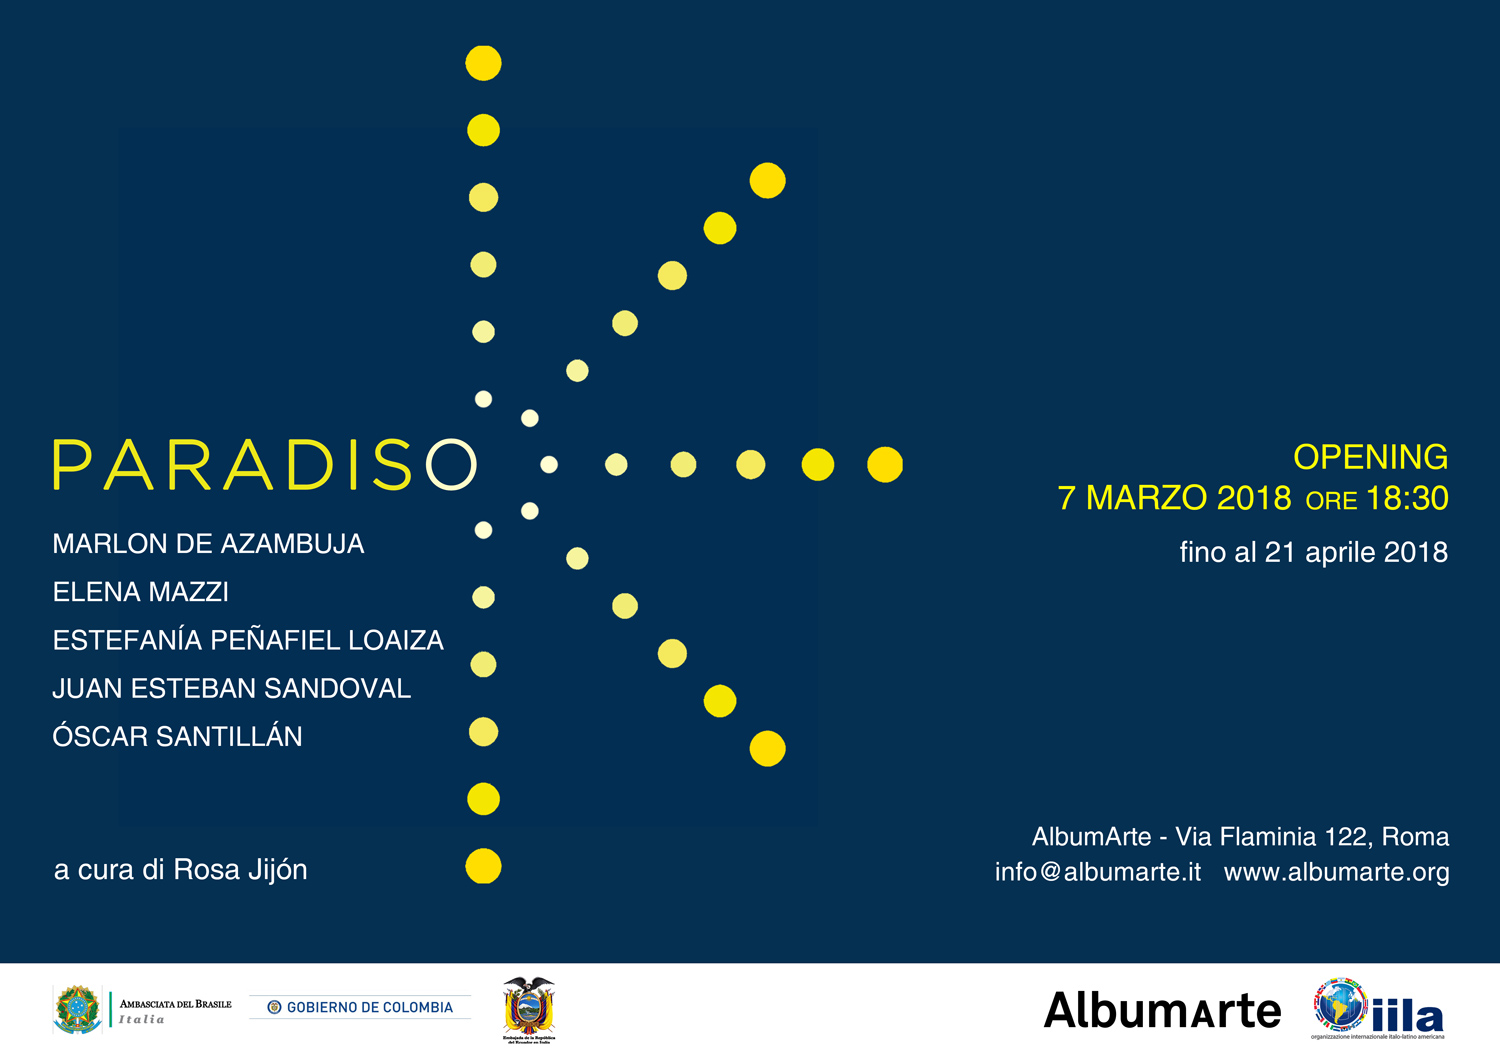 AlbumArte-PARADISO-7mar2018 invito